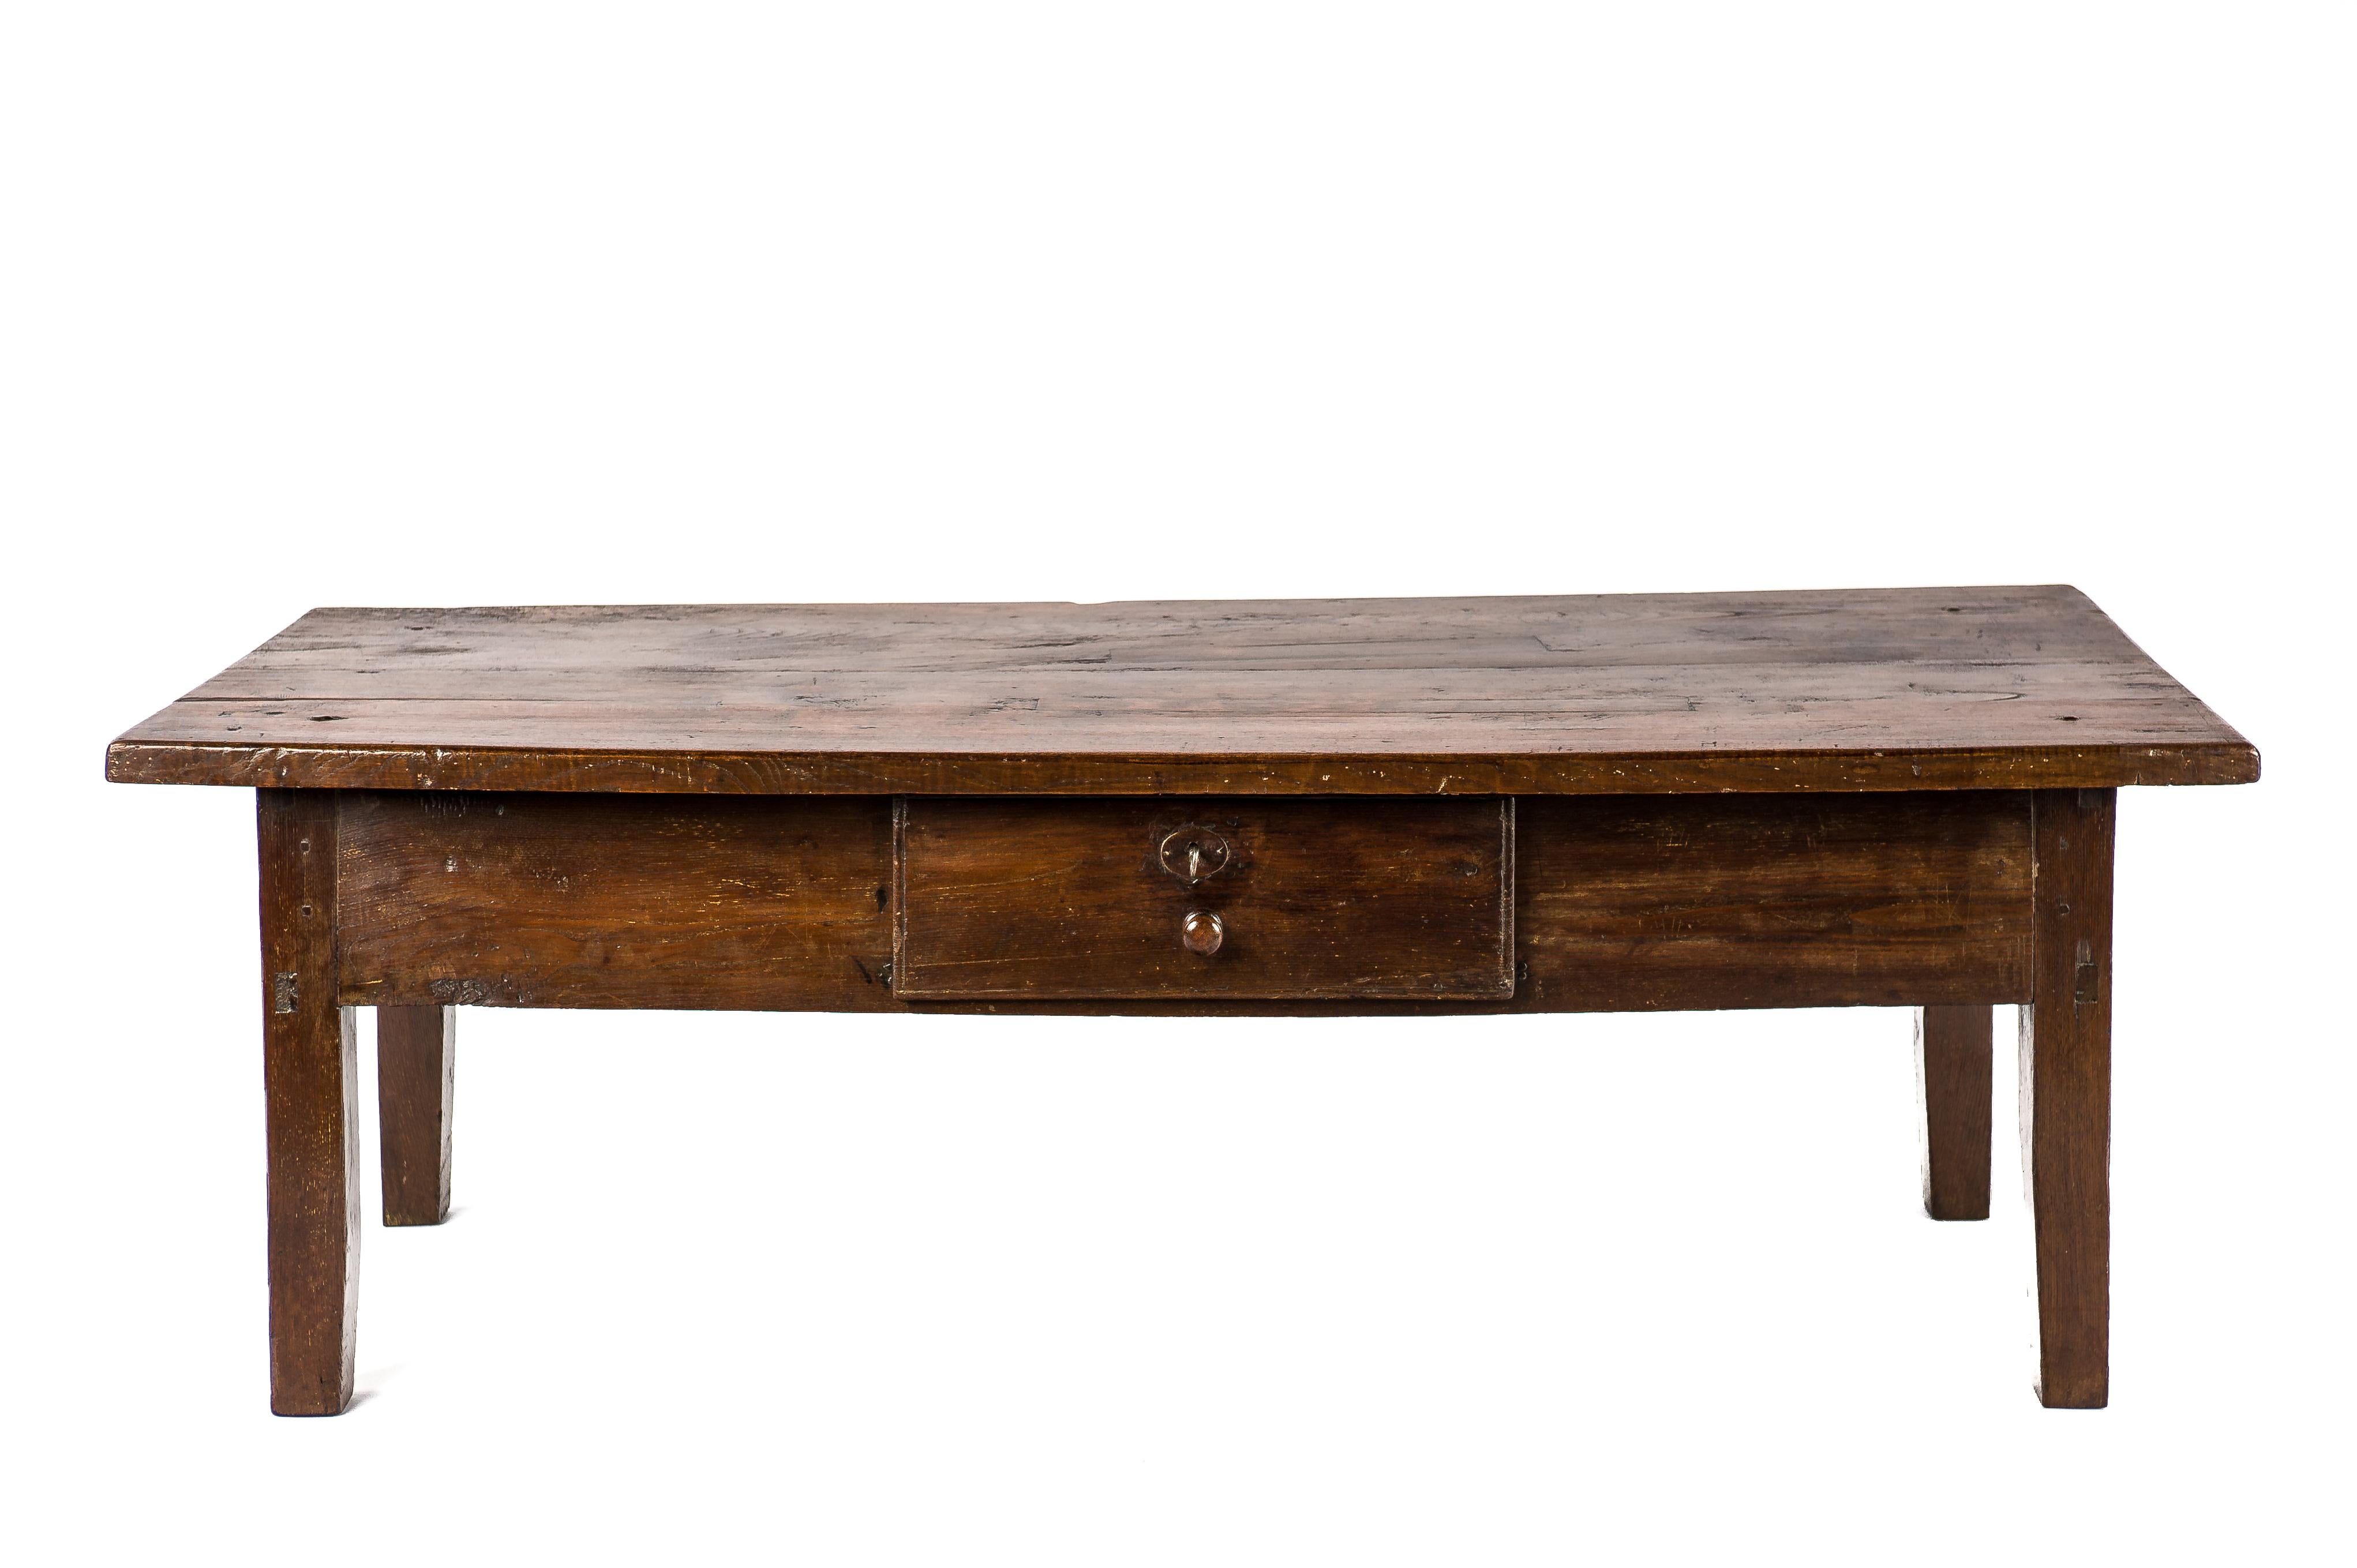 Cette belle table basse ou table basse rustique de couleur brun chaud provient de la campagne espagnole et date d'environ 1820. Le plateau de la table est fantastique et a été fabriqué à partir de deux planches de châtaignier massif d'une épaisseur